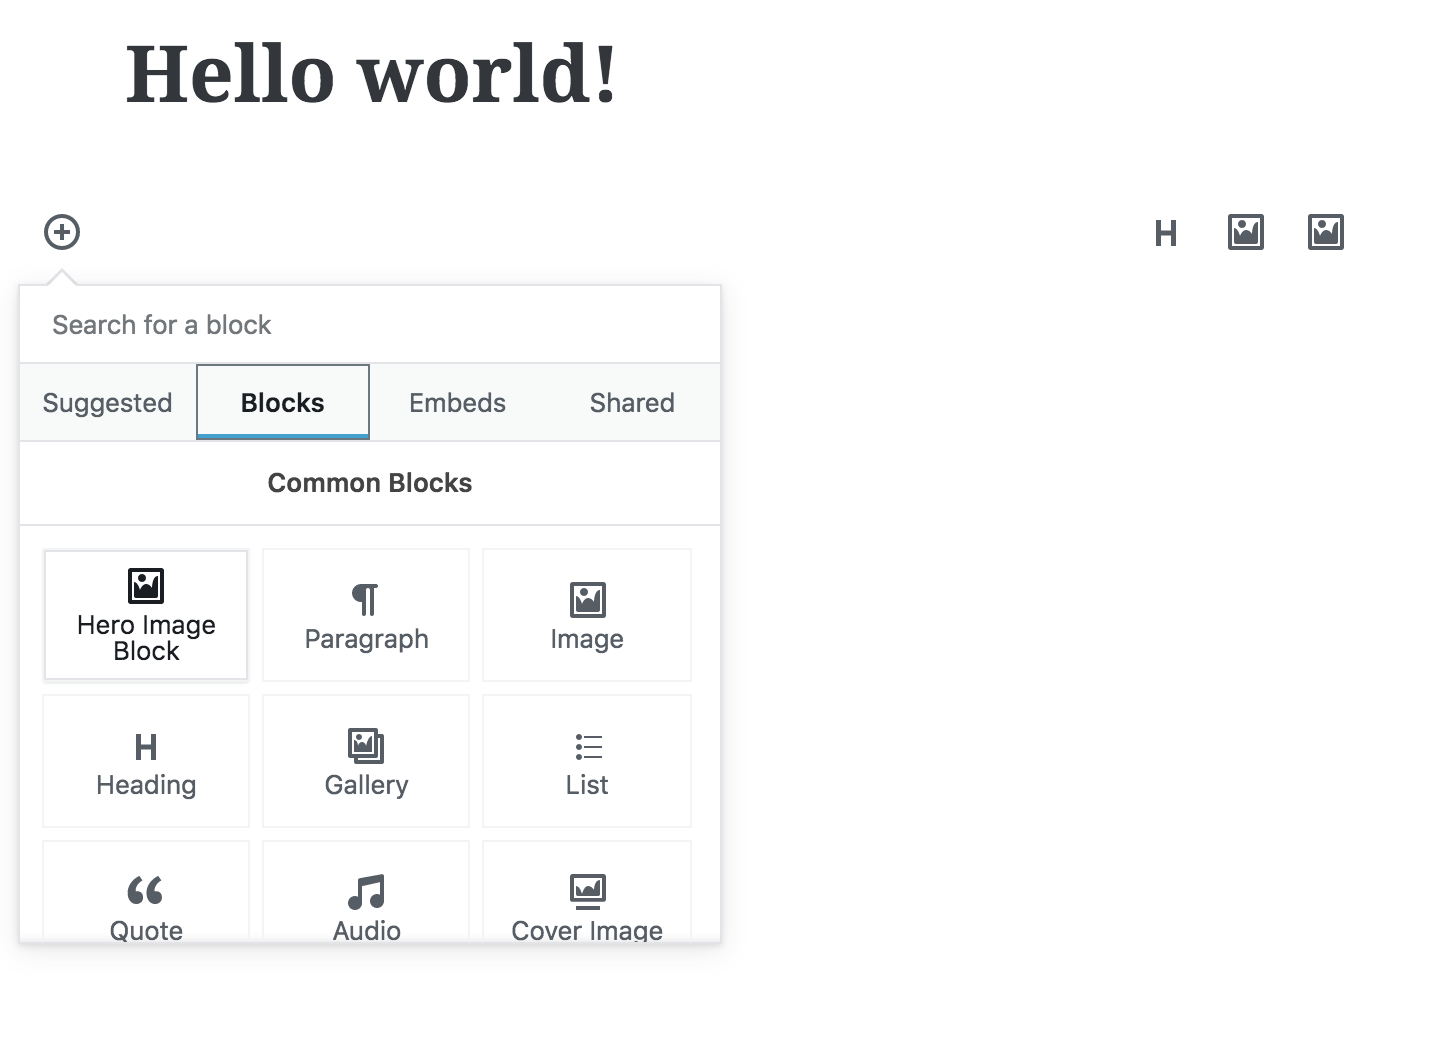 WordPress Gutenberg editor menu open and displaying "Hero Image Block" as an option